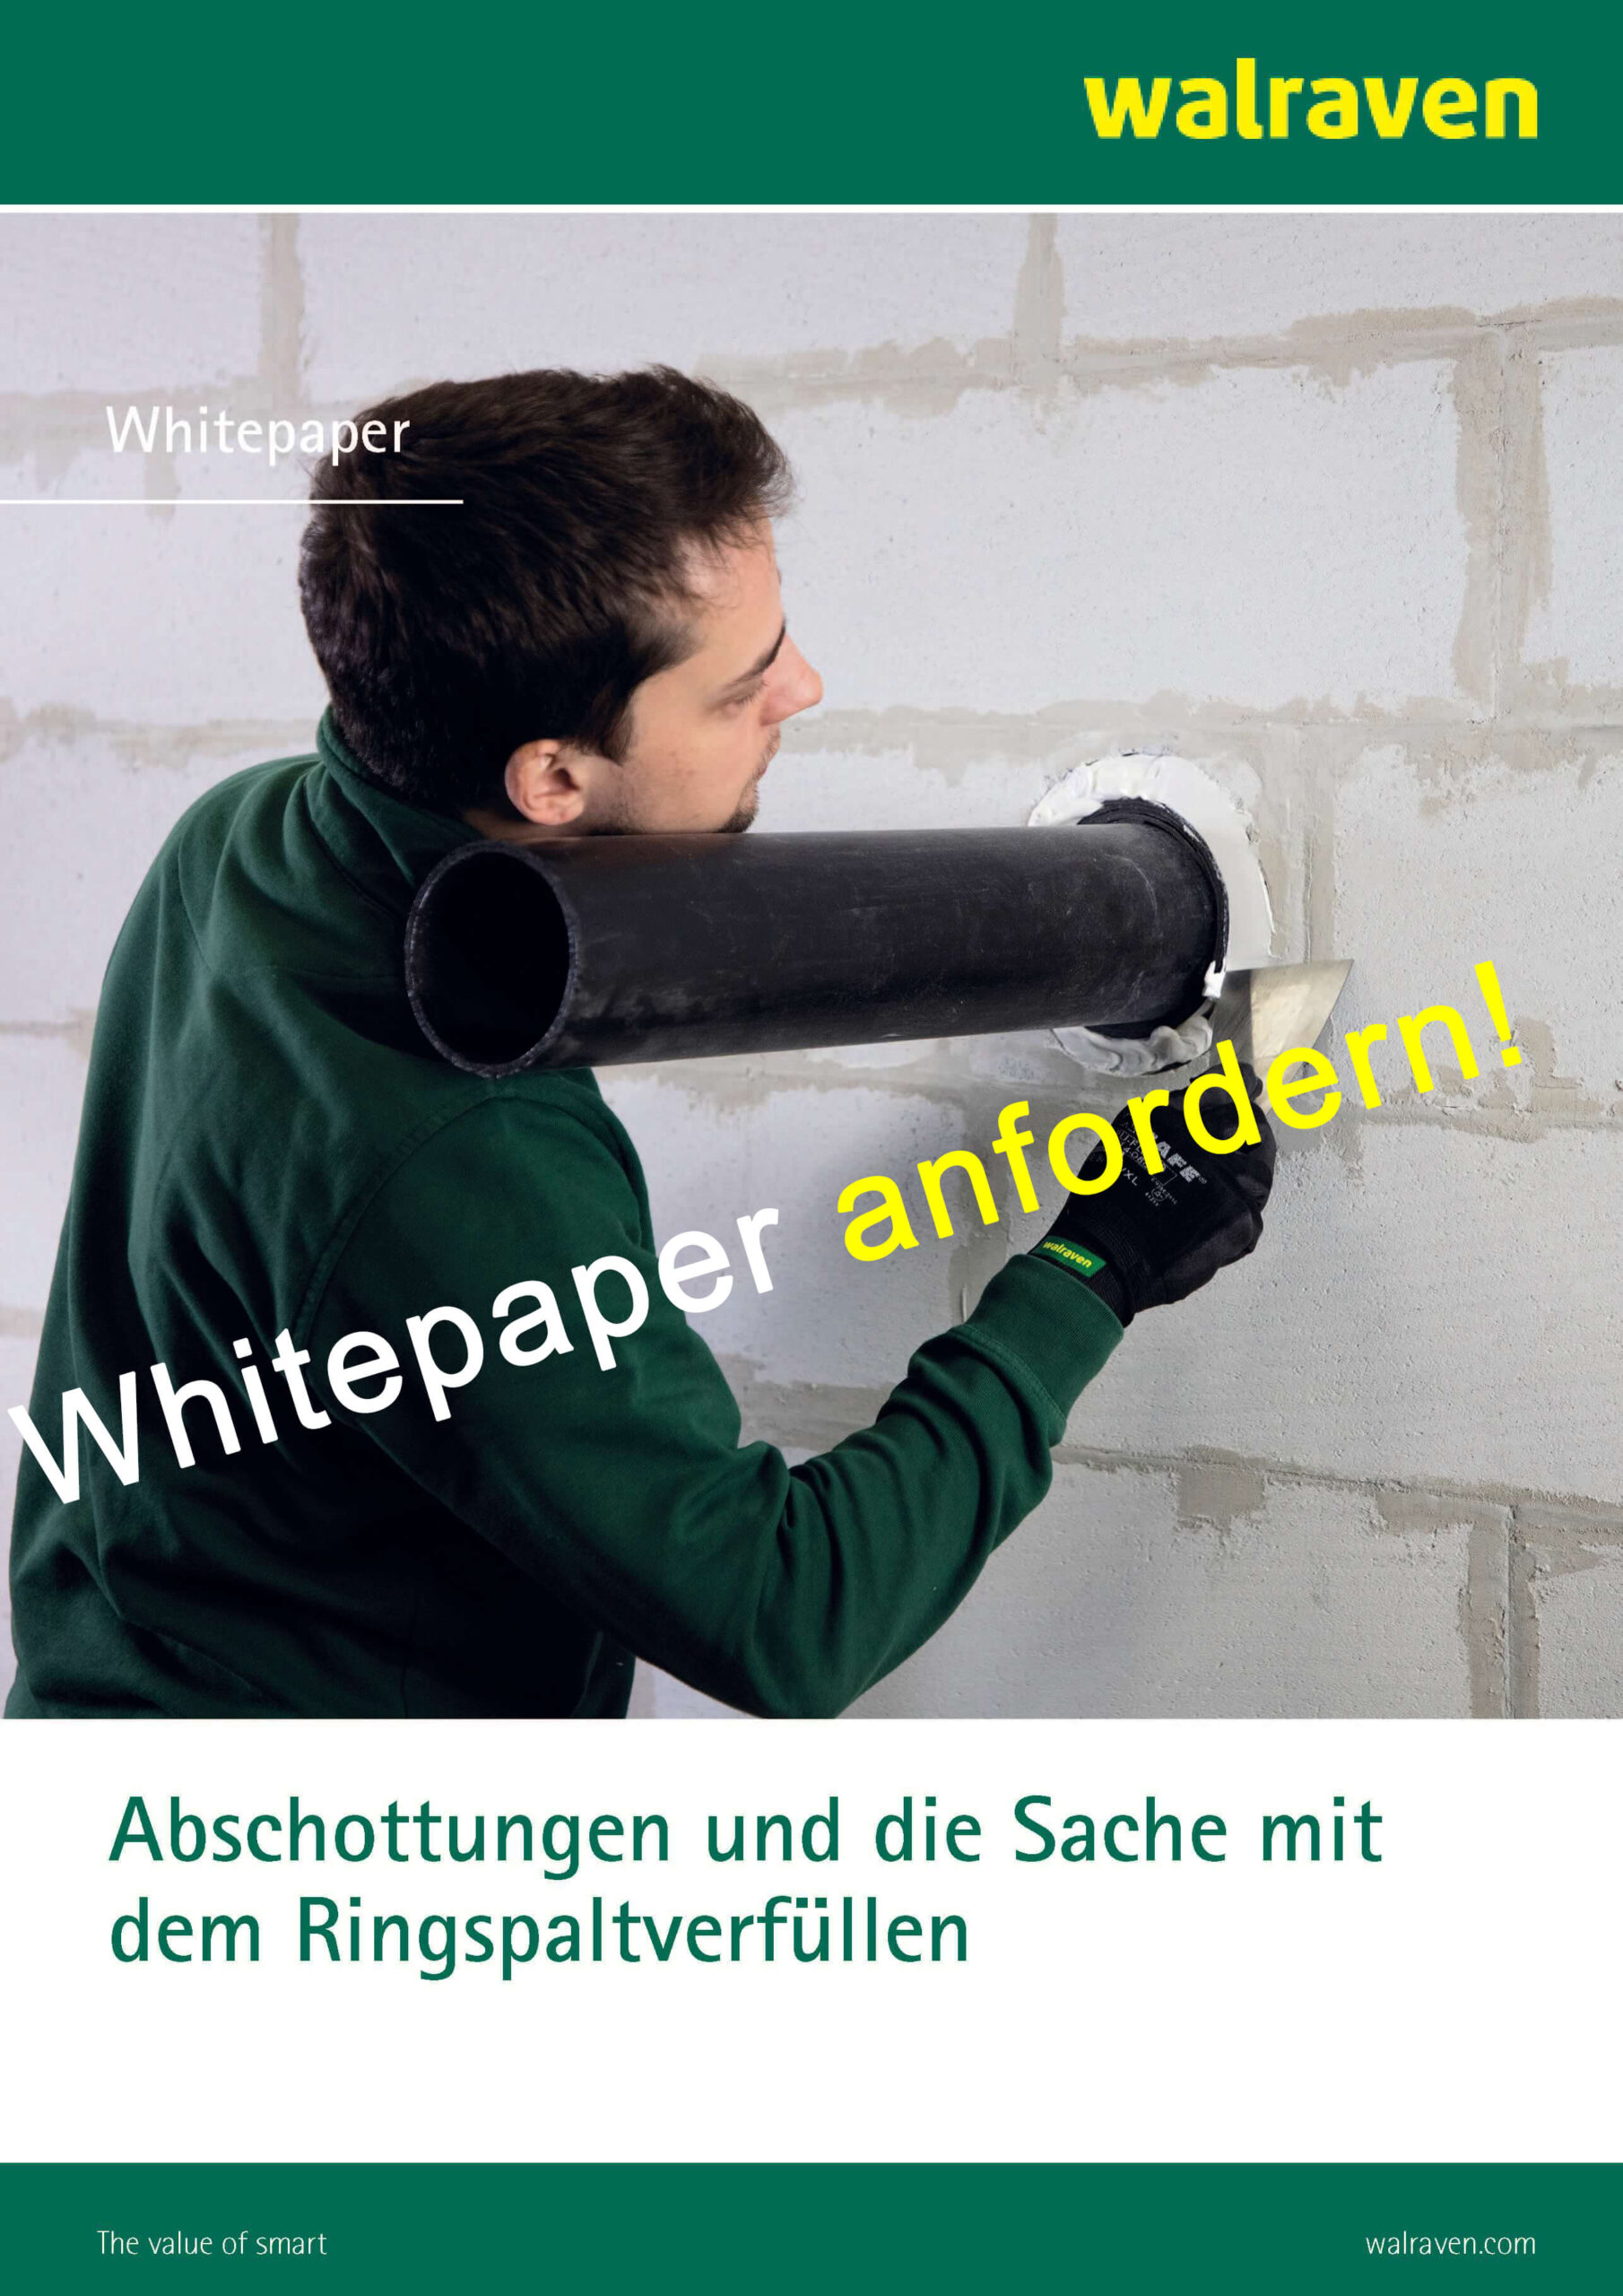 Whitepaper "Abschottungen und die Sache mit dem Ringspaltverfüllen"